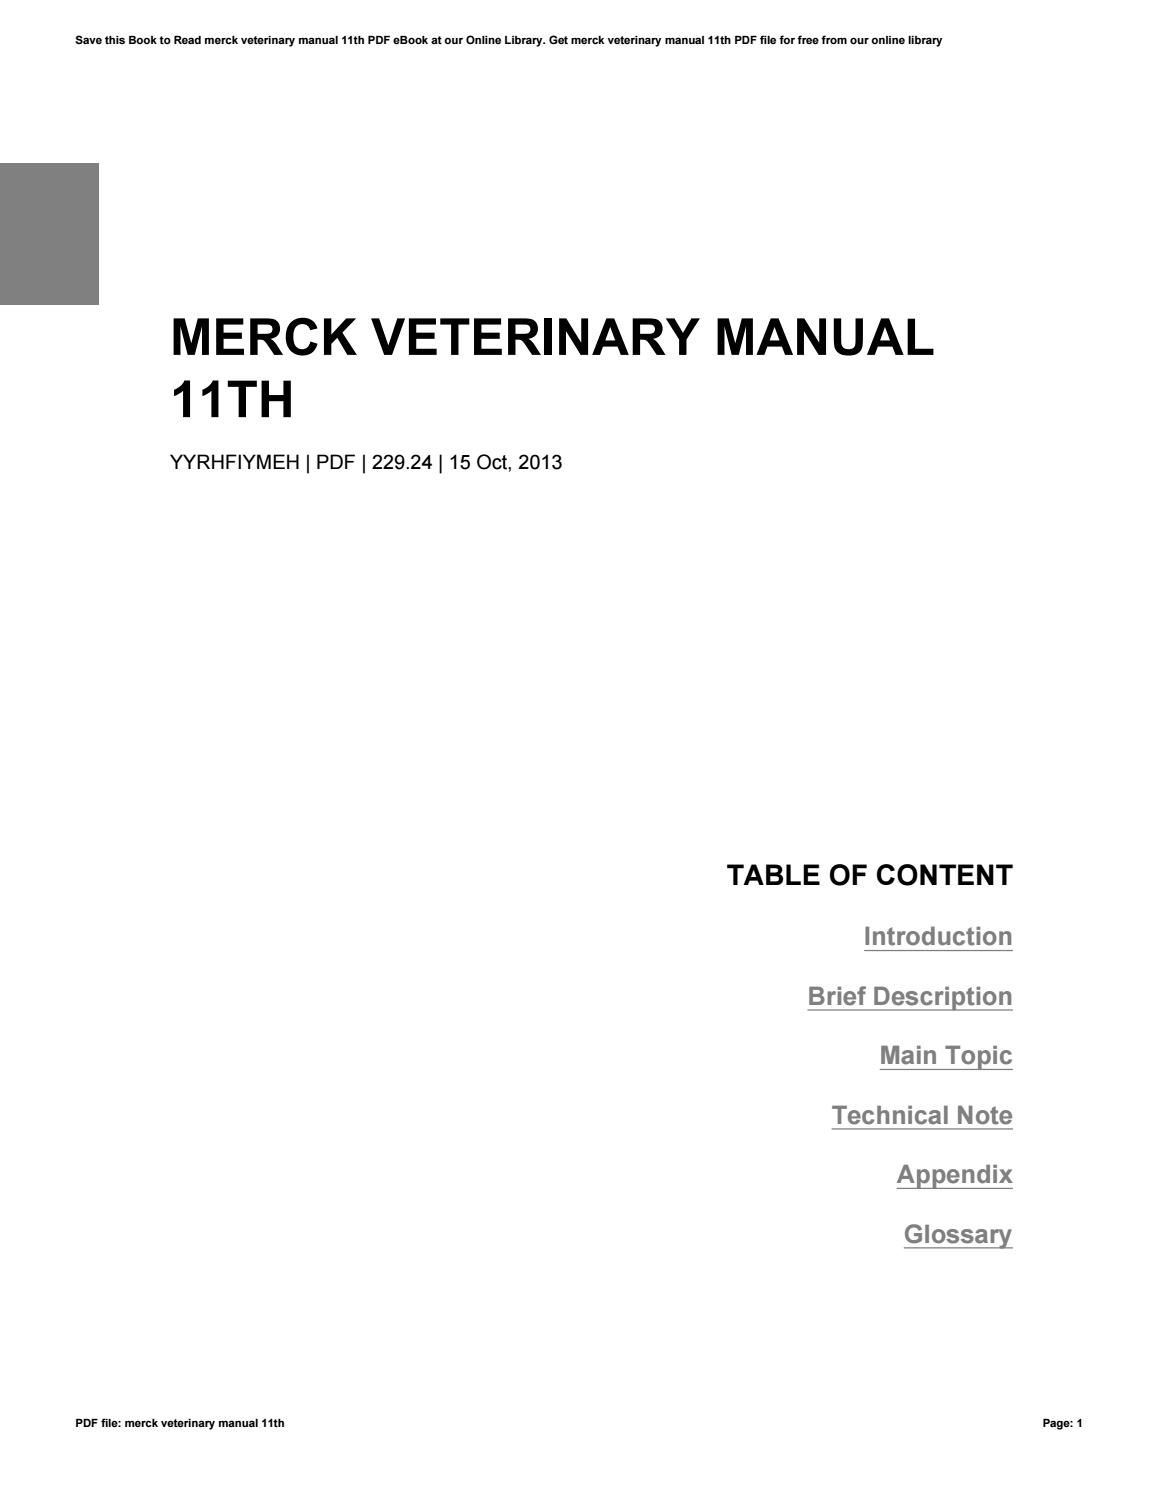 Merck veterinary manual book